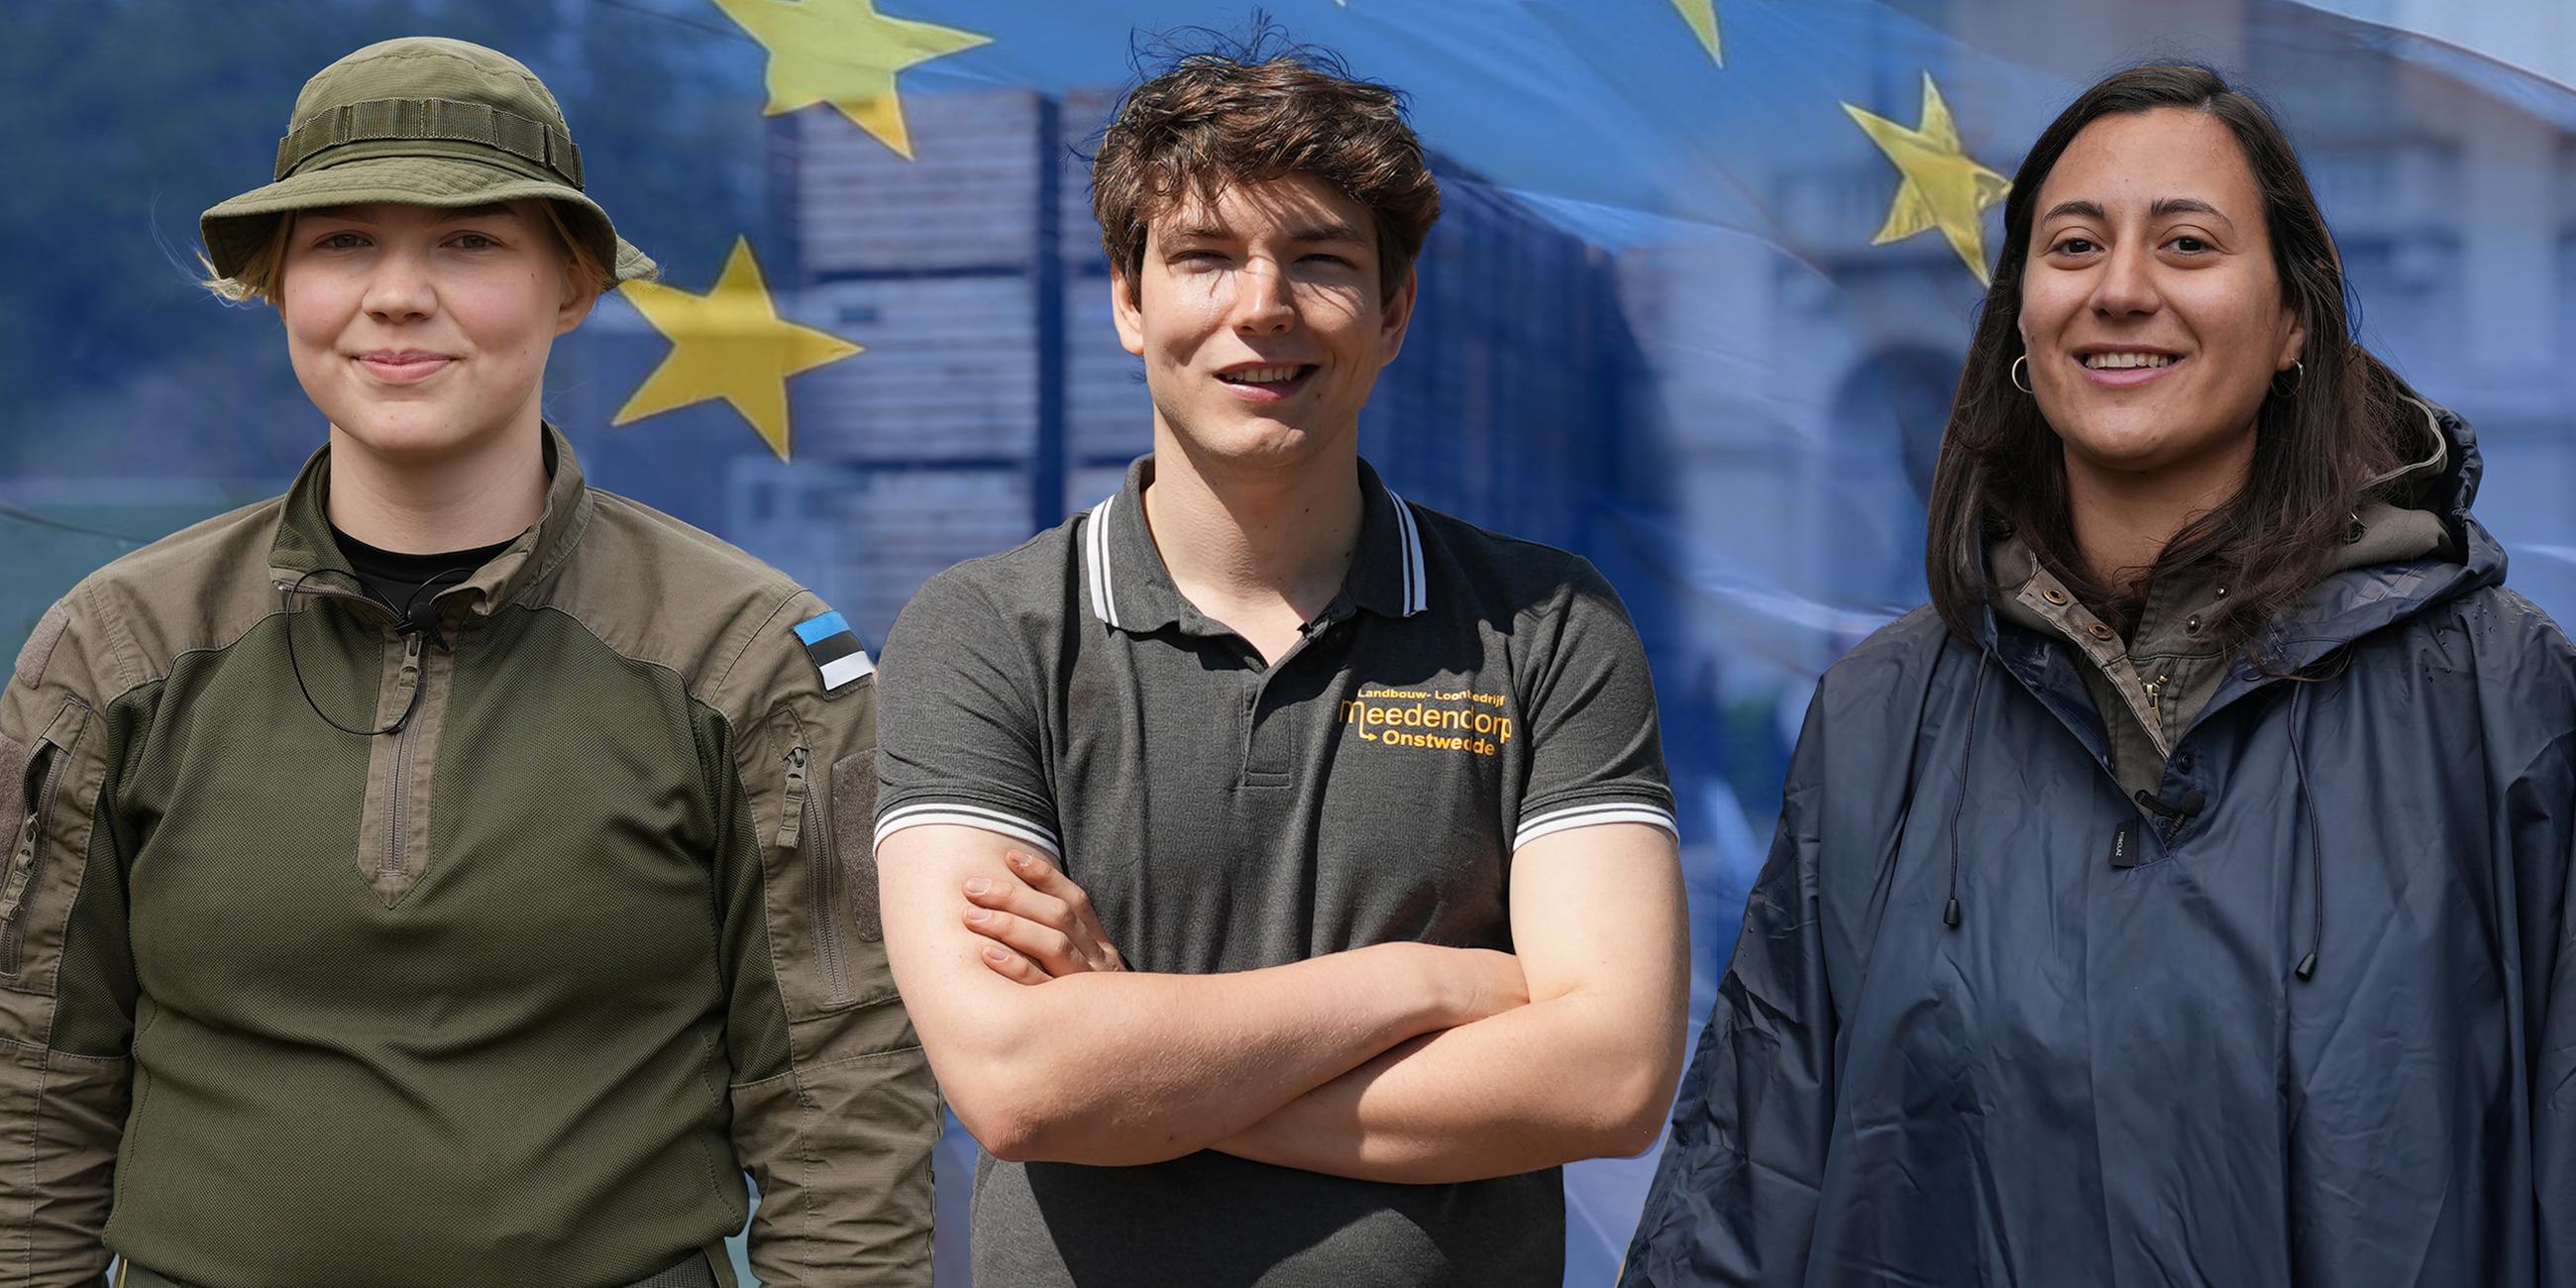 Jugend – Macht – Europa: Das muss sich ändern